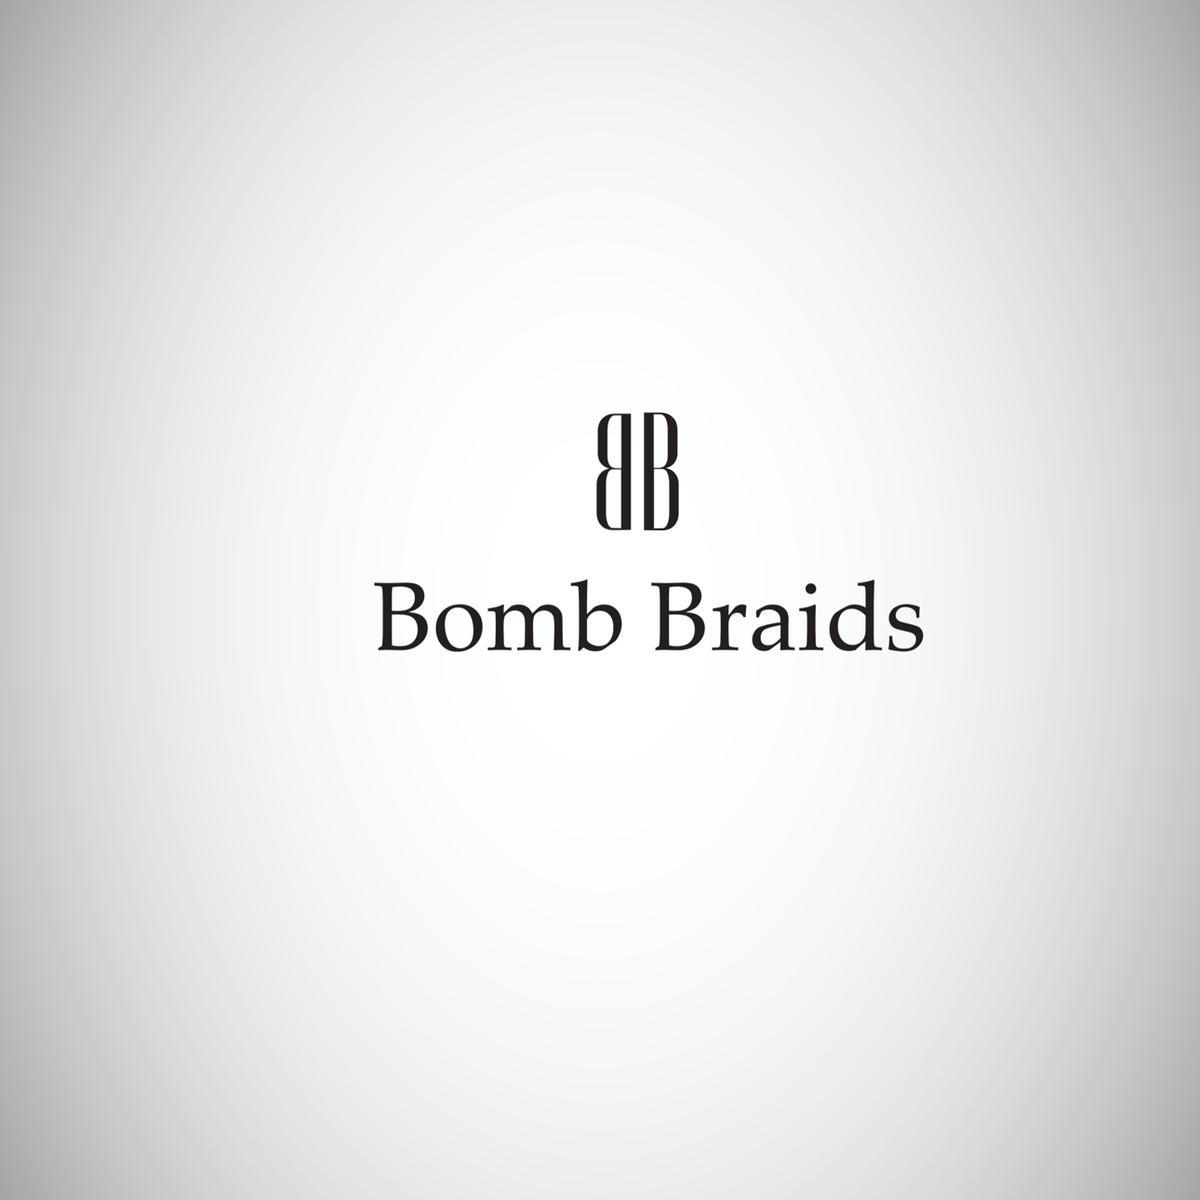 BombBraids's images